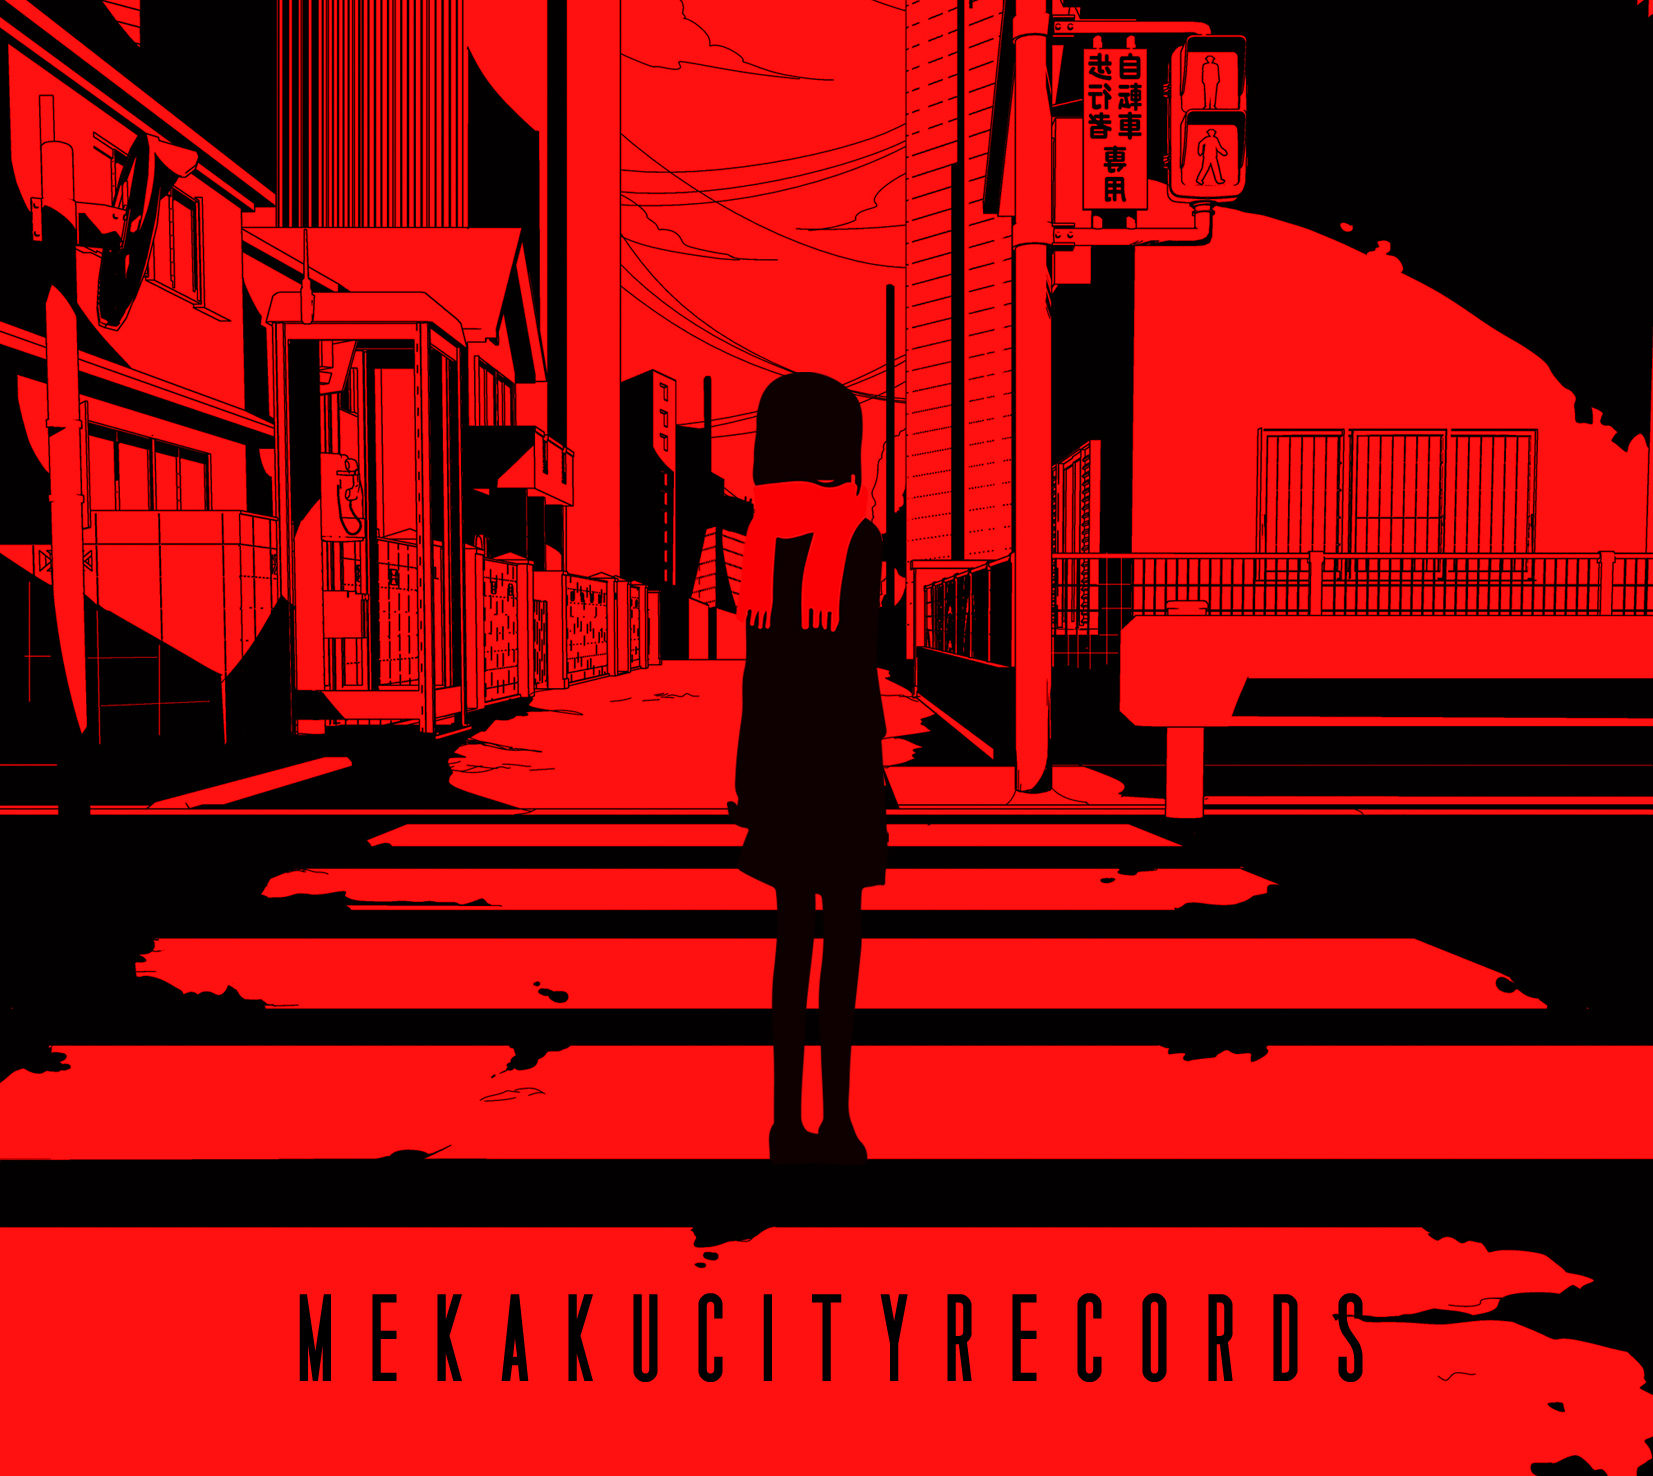 Mekakucity Records | Kagerou Project Wiki | Fandom